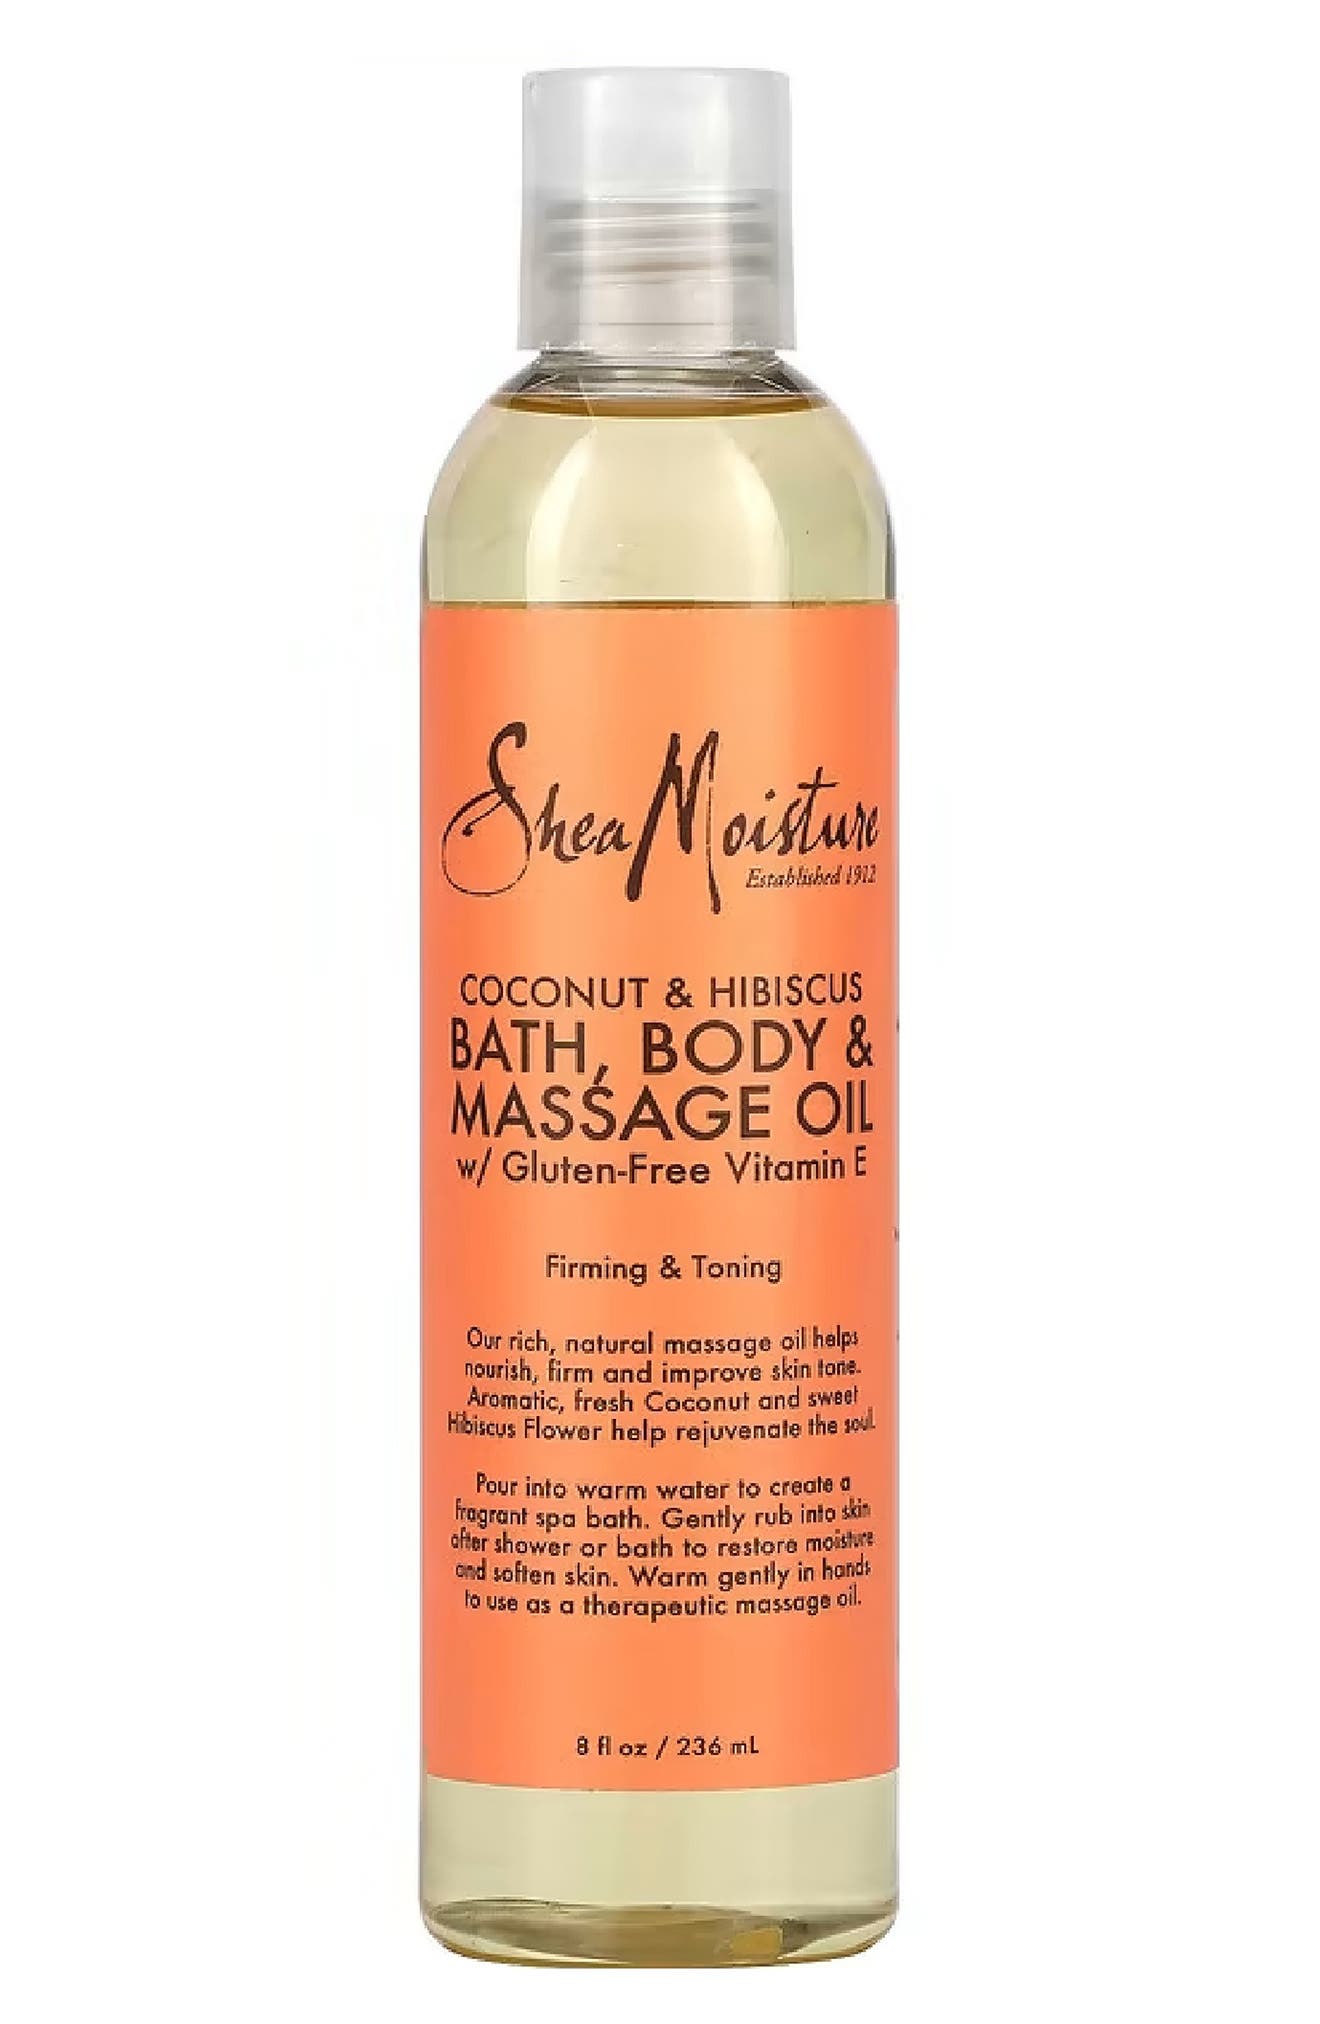 Coconut & Hibiscus Bath, Body & Massage Oil with Gluten-Free Vitamin E - 8 fl. oz. She